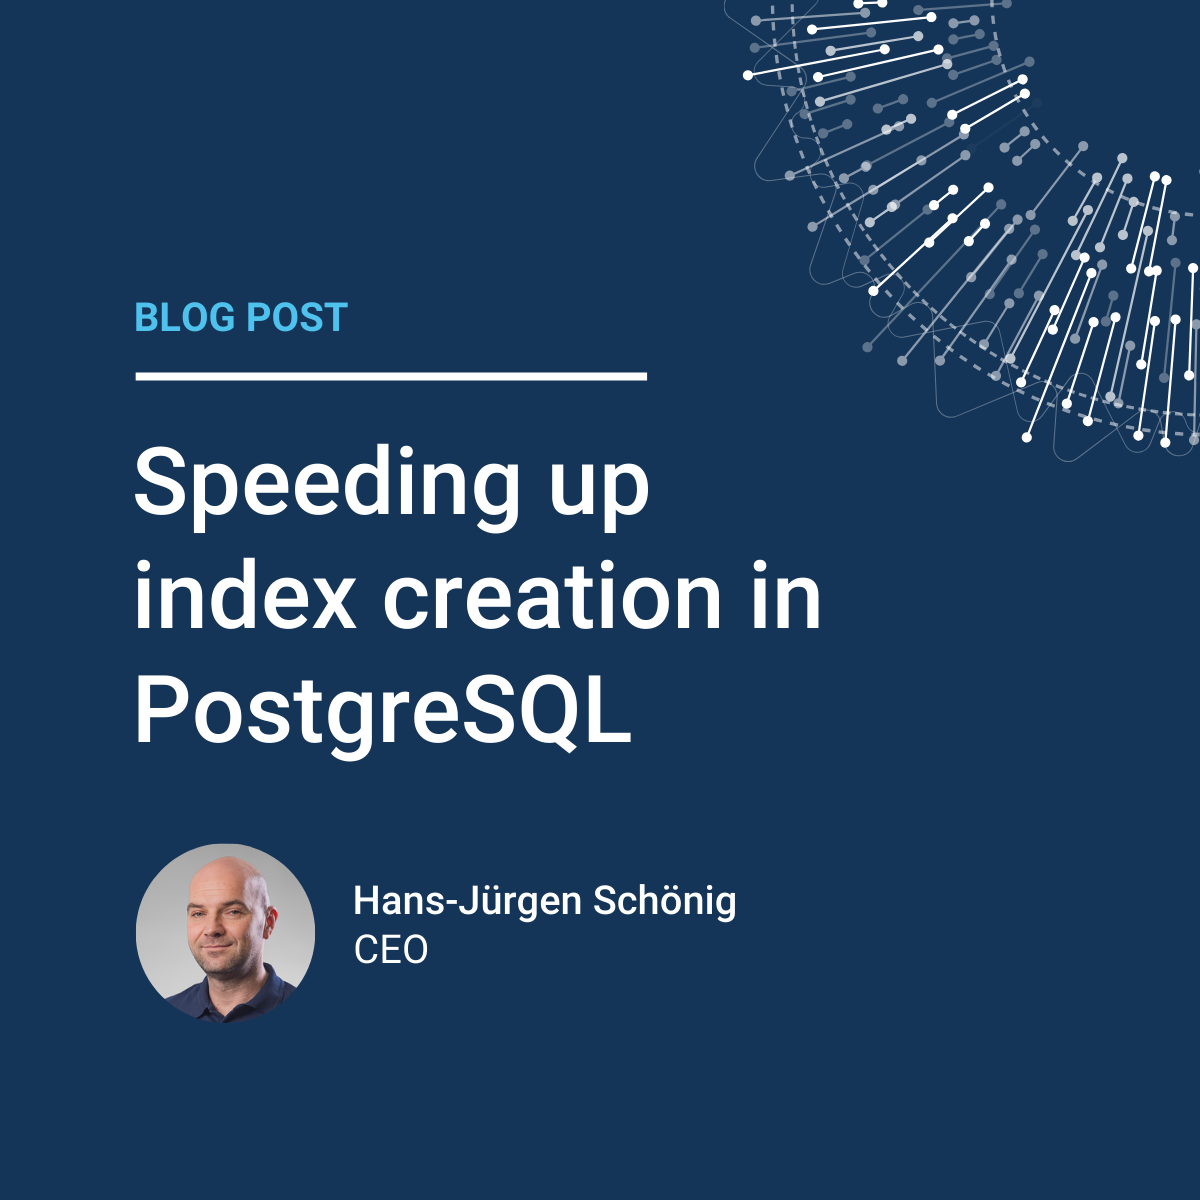 Hans-Juergen Schoenig: Speeding up index creation in PostgreSQL